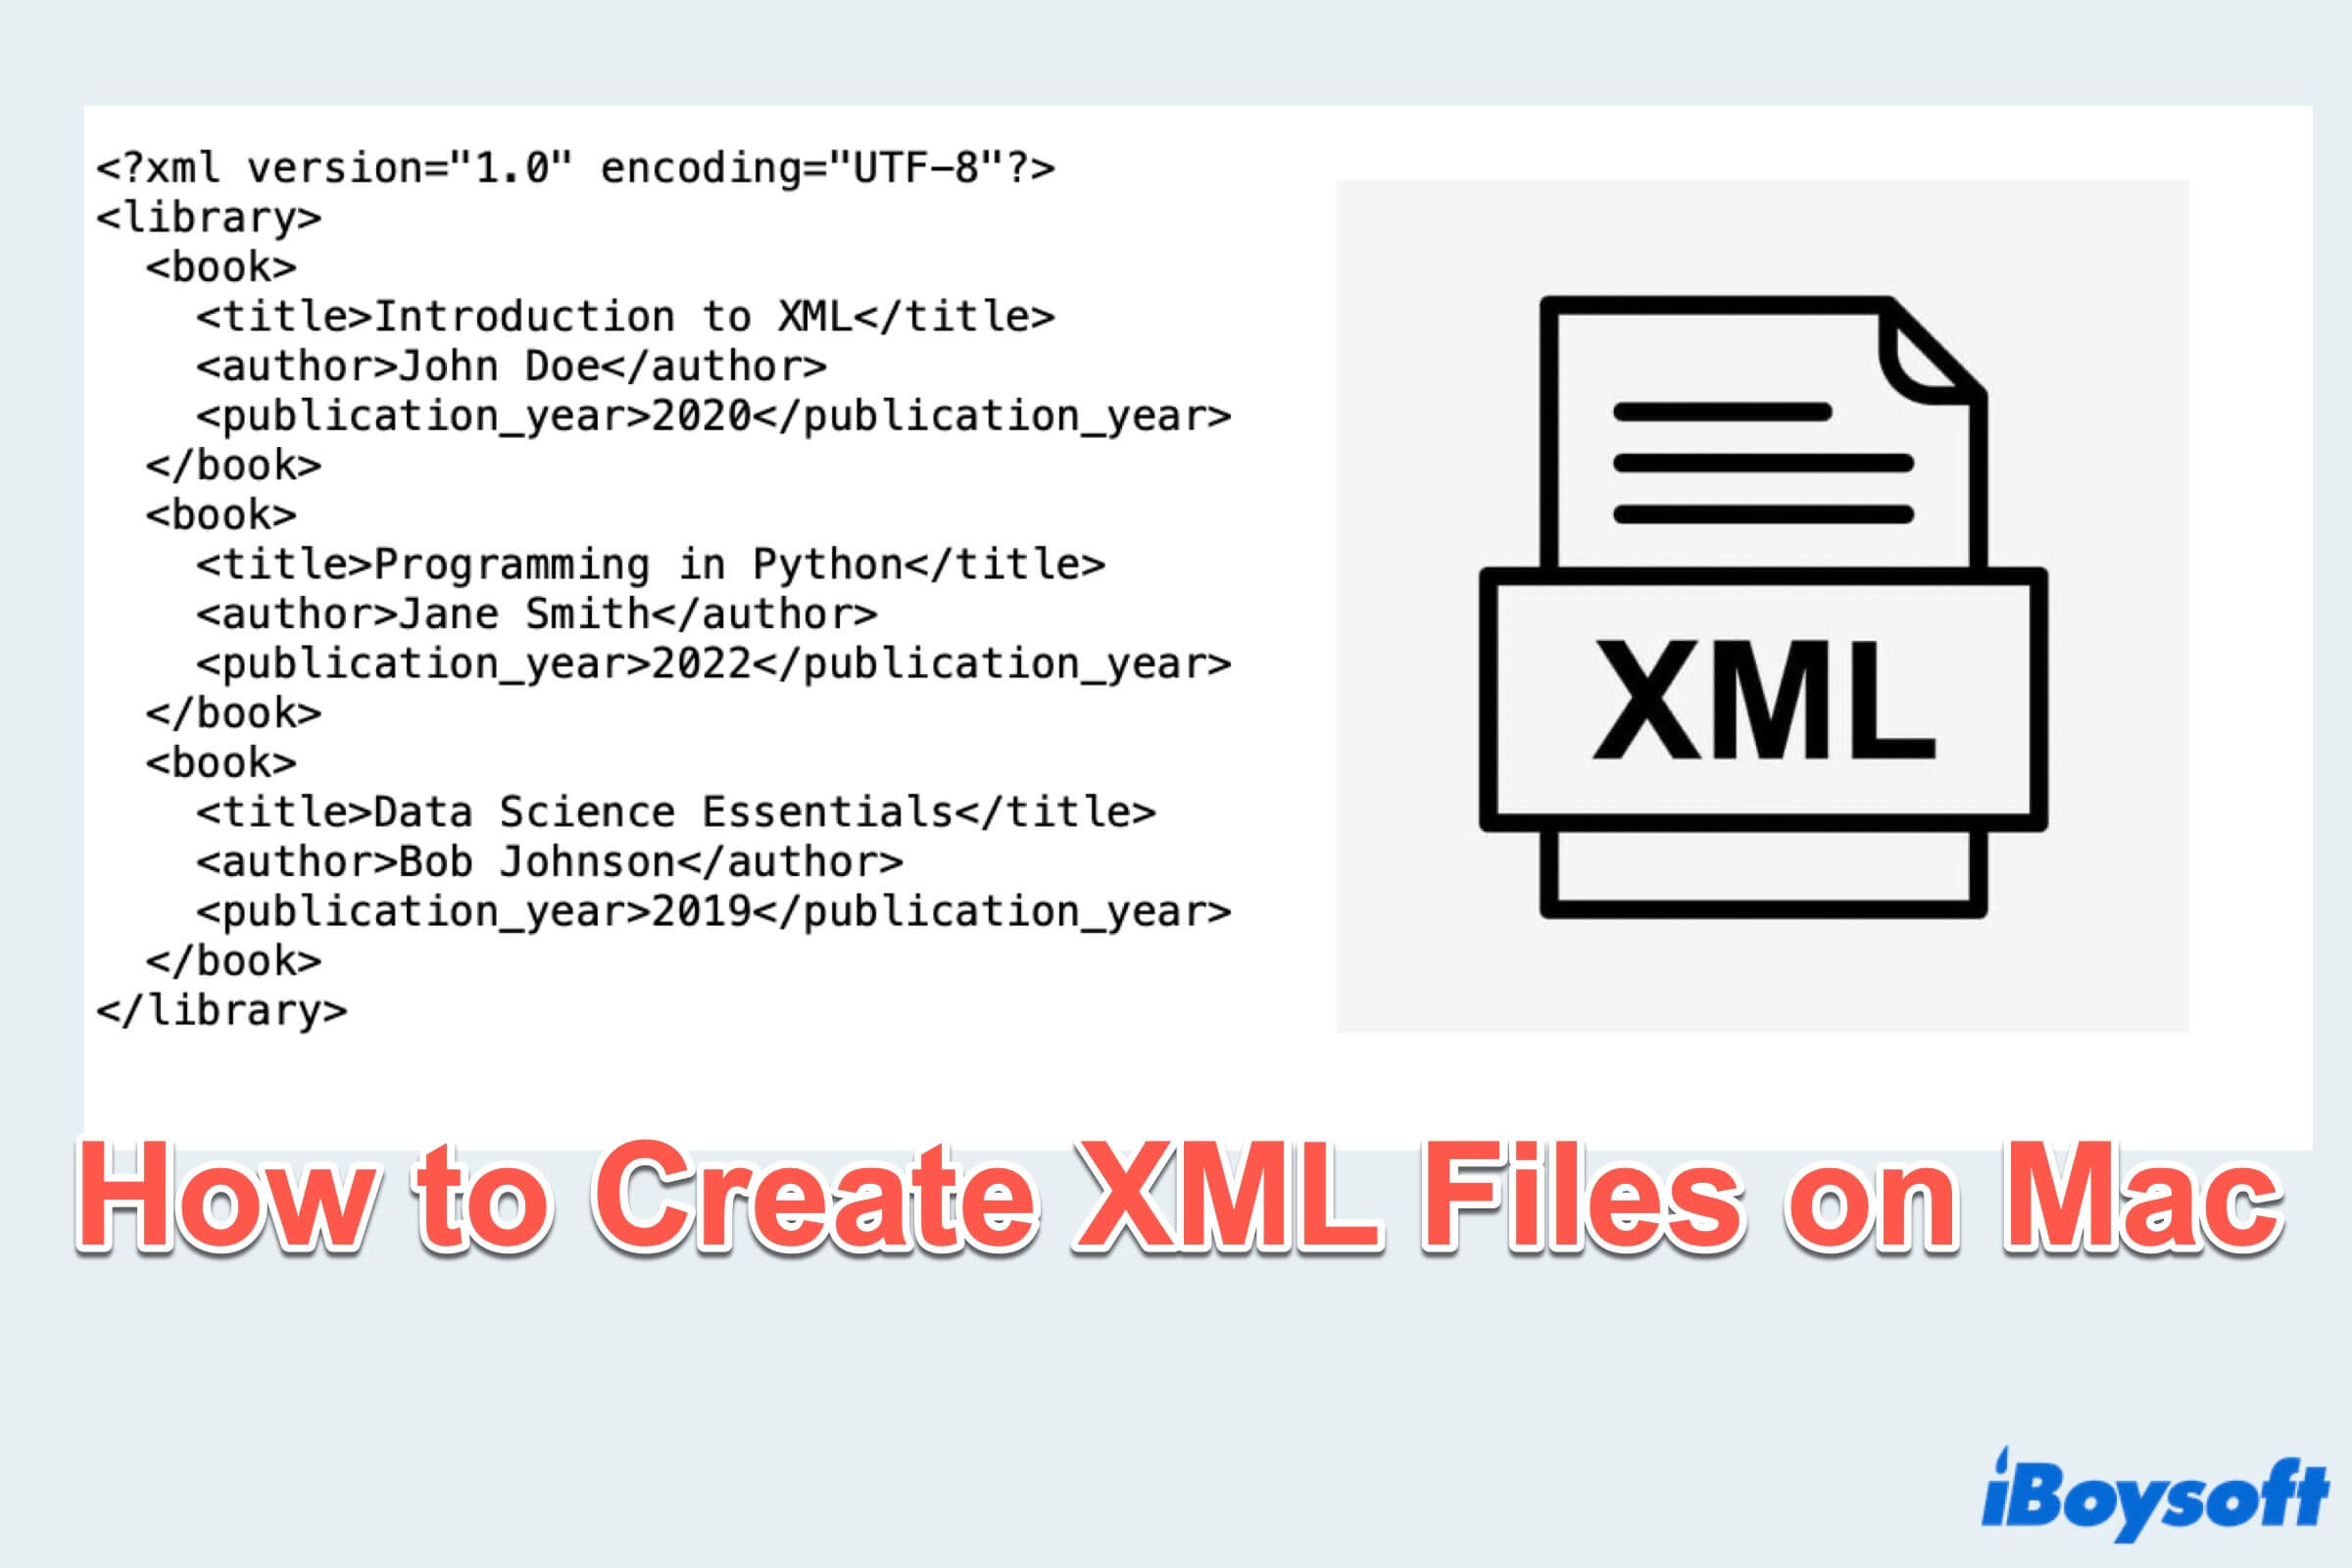 Zusammenfassung zur Erstellung einer XML-Datei auf dem Mac